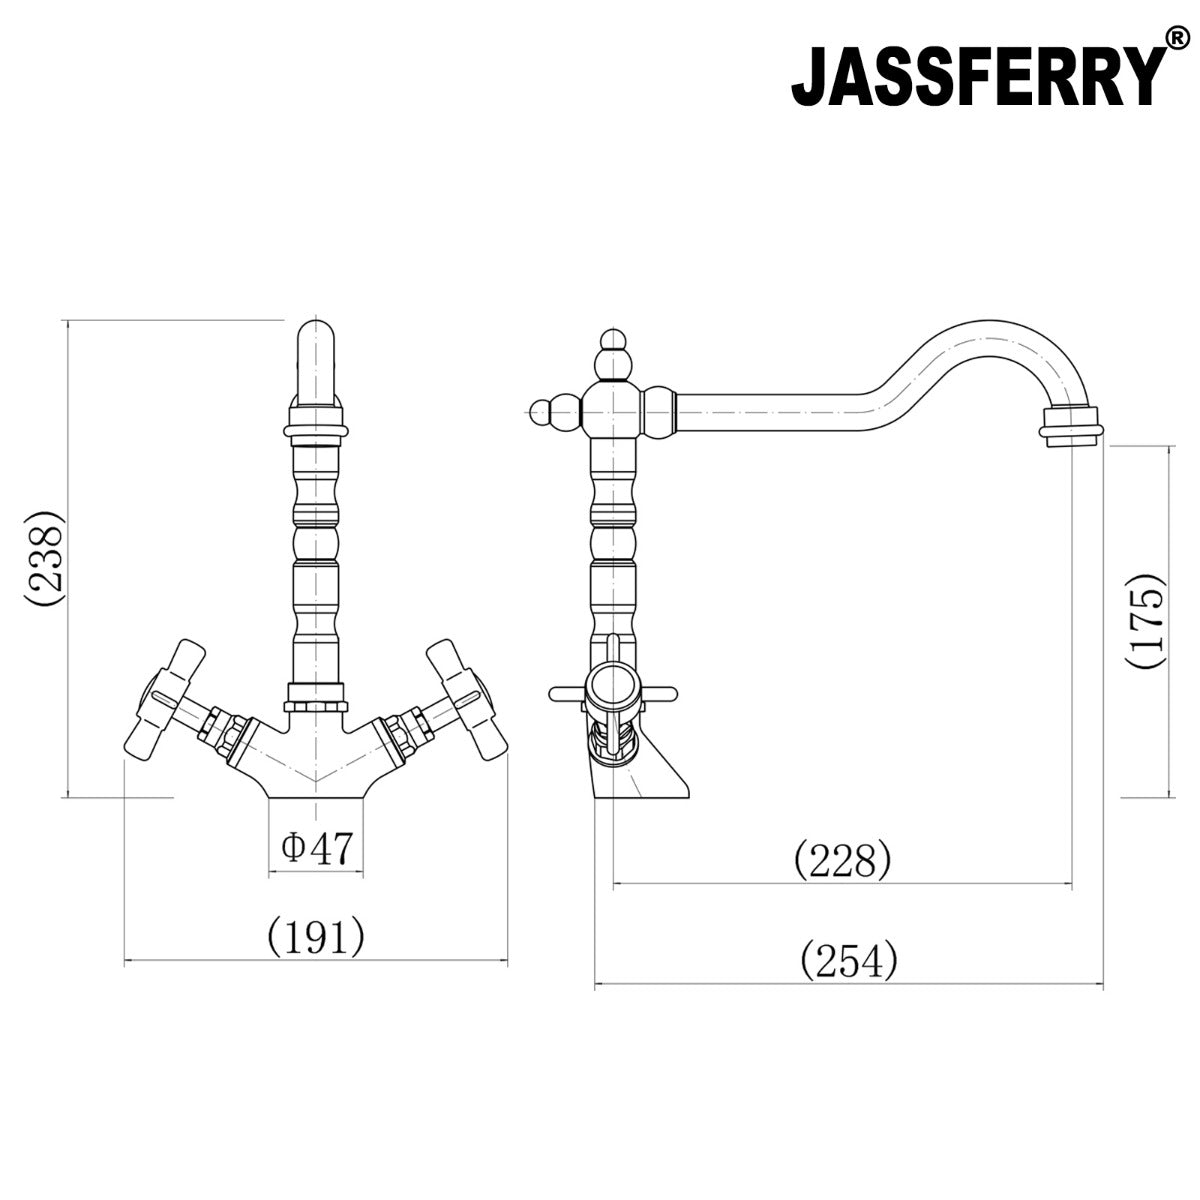 JassferryJASSFERRY New Monobloc Kitchen Sink Mixer Tap Swivel Spout French Cross HandlesKitchen taps